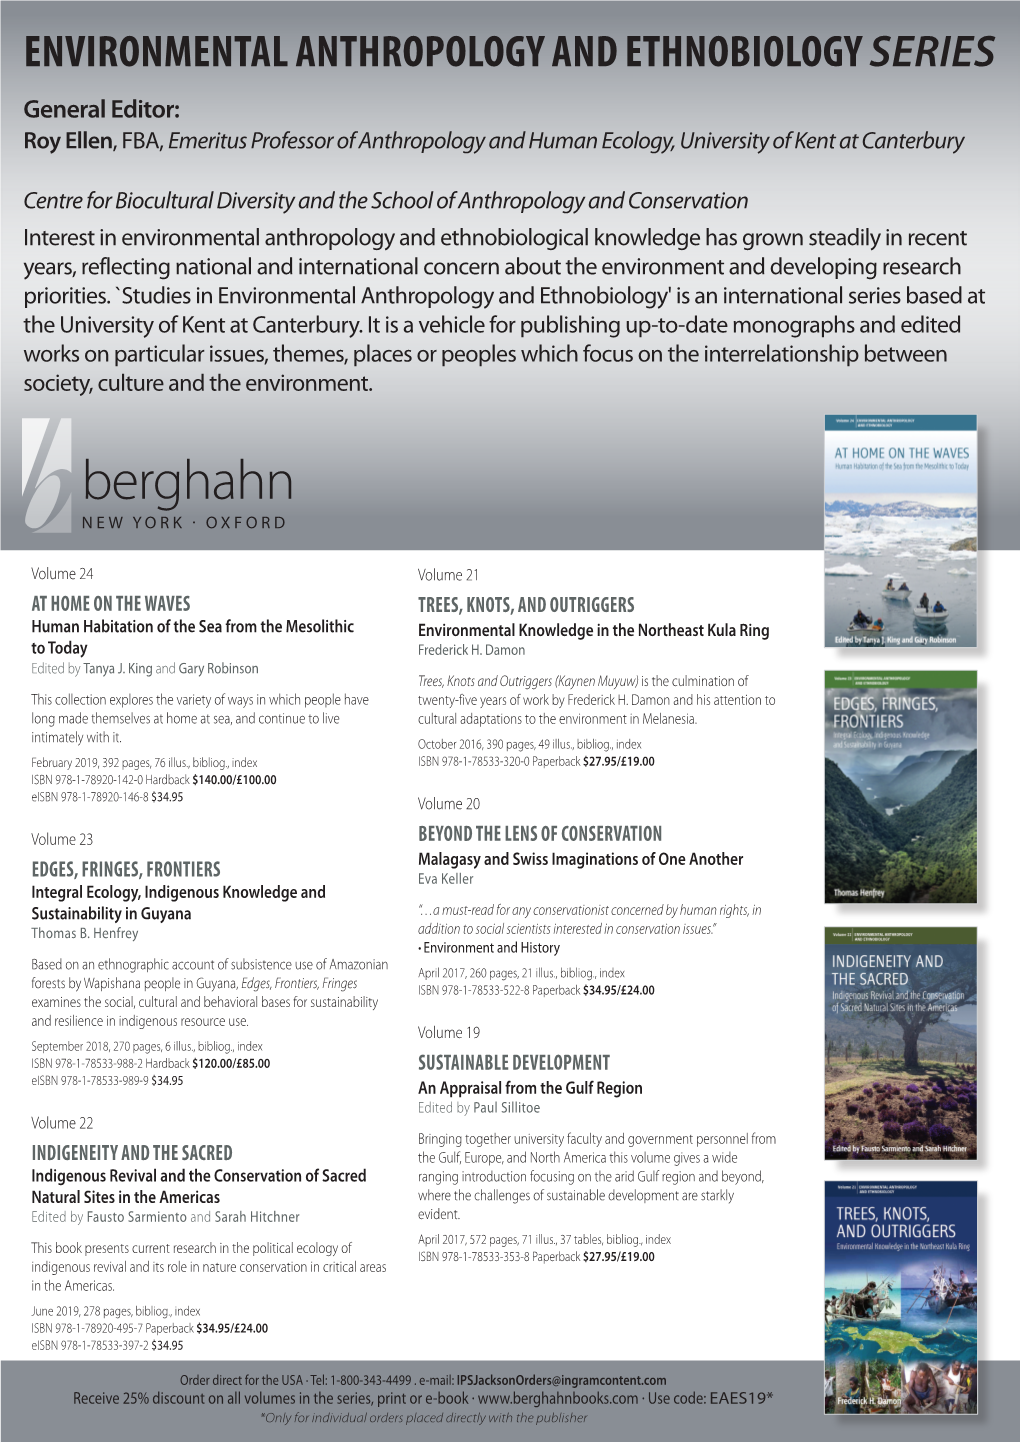 Berghahn 2019 Environmental Anthropology and Ethnobiology